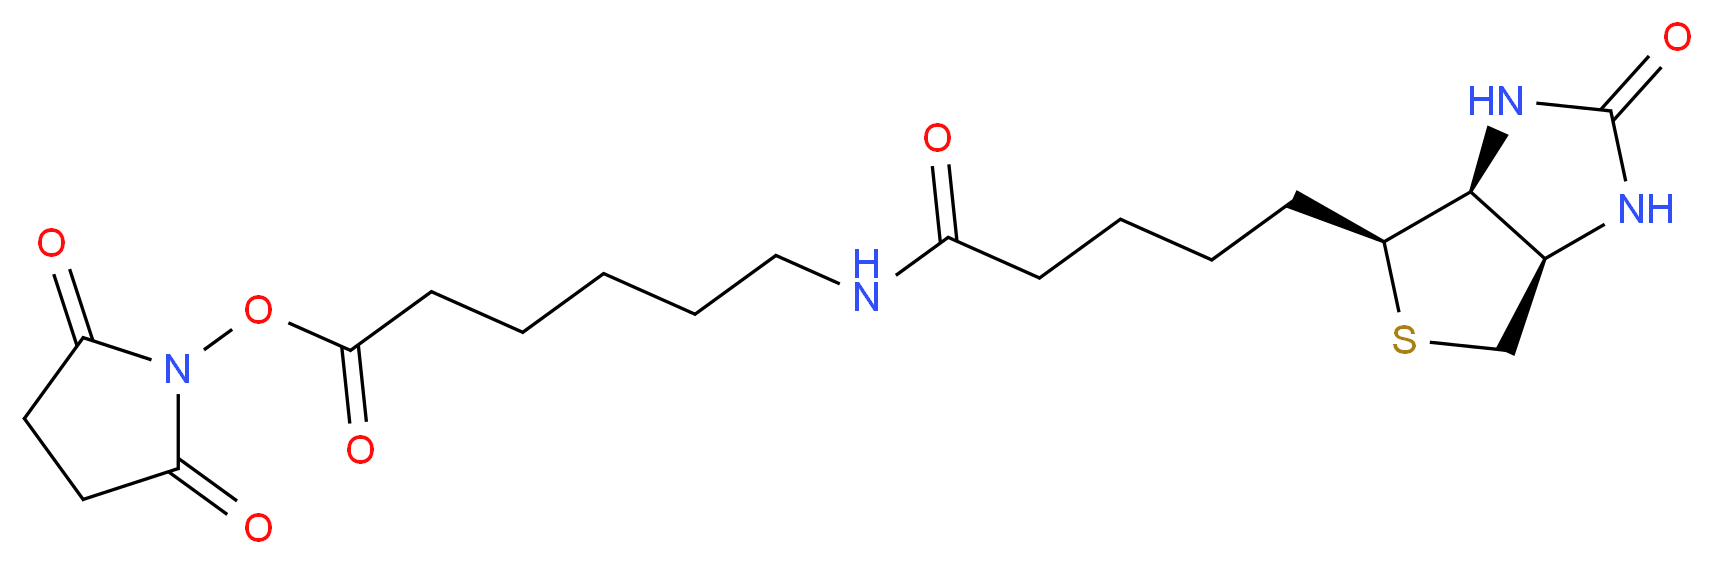 72040-63-2 molecular structure